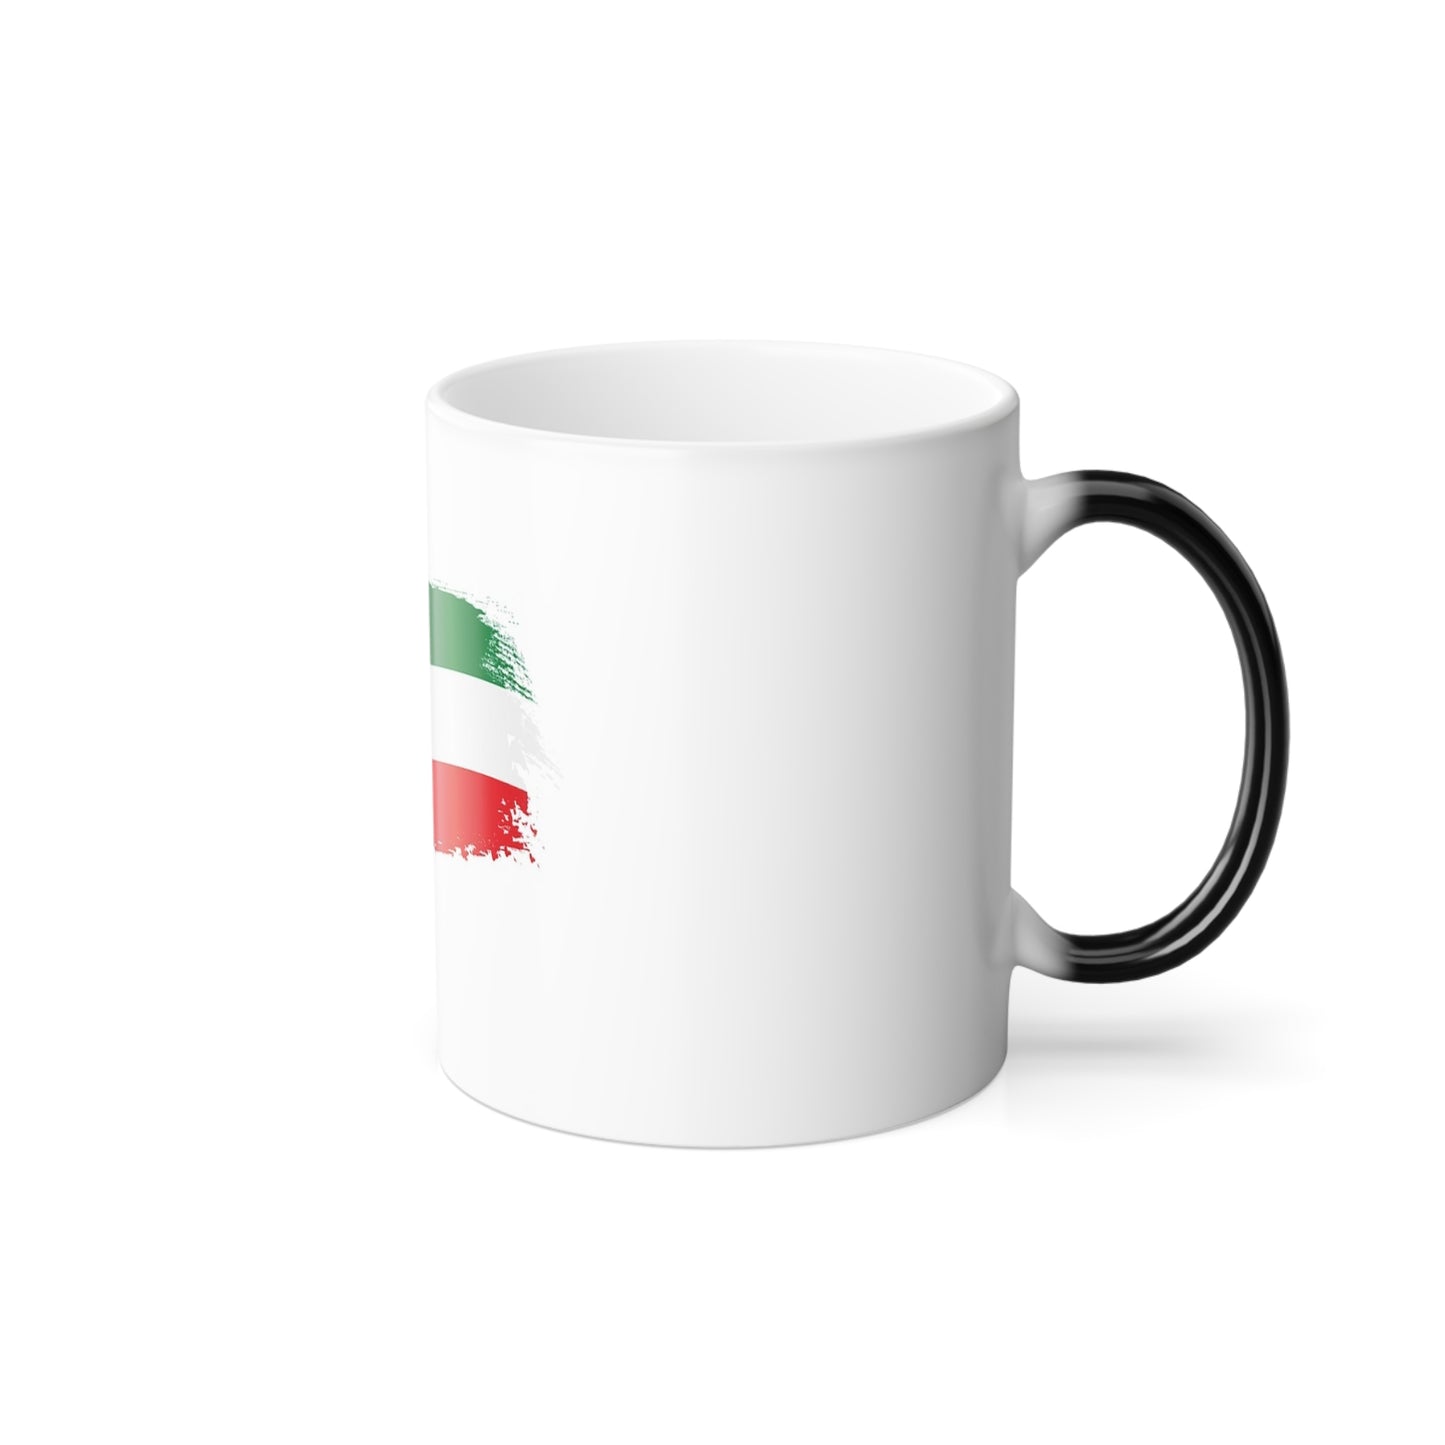 Color Morphing Mug, with Kuwait Flag